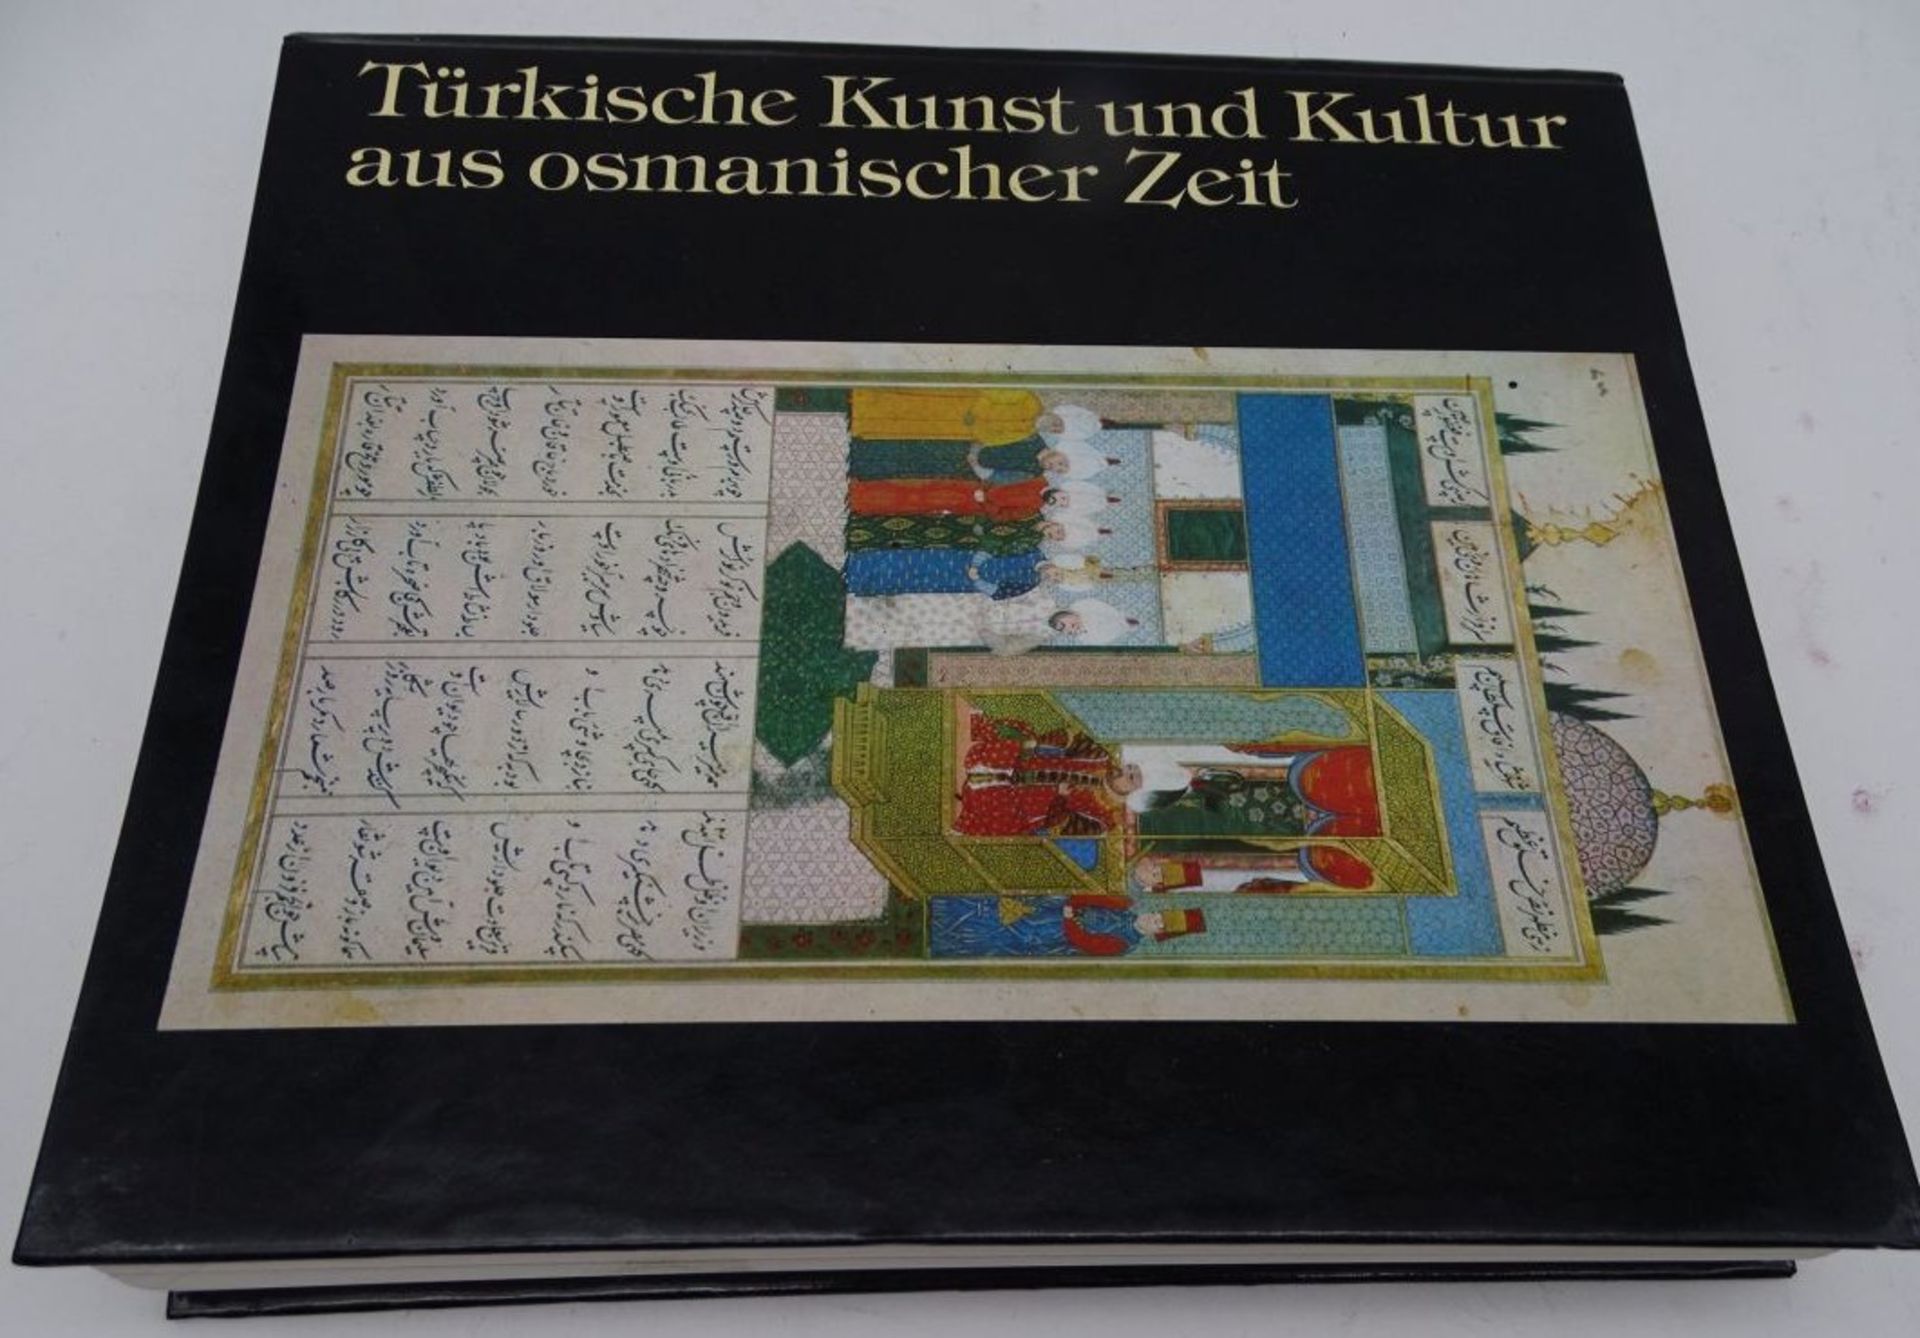 Türkische Kunst und Kultur aus osmanischer Zeit, 1985